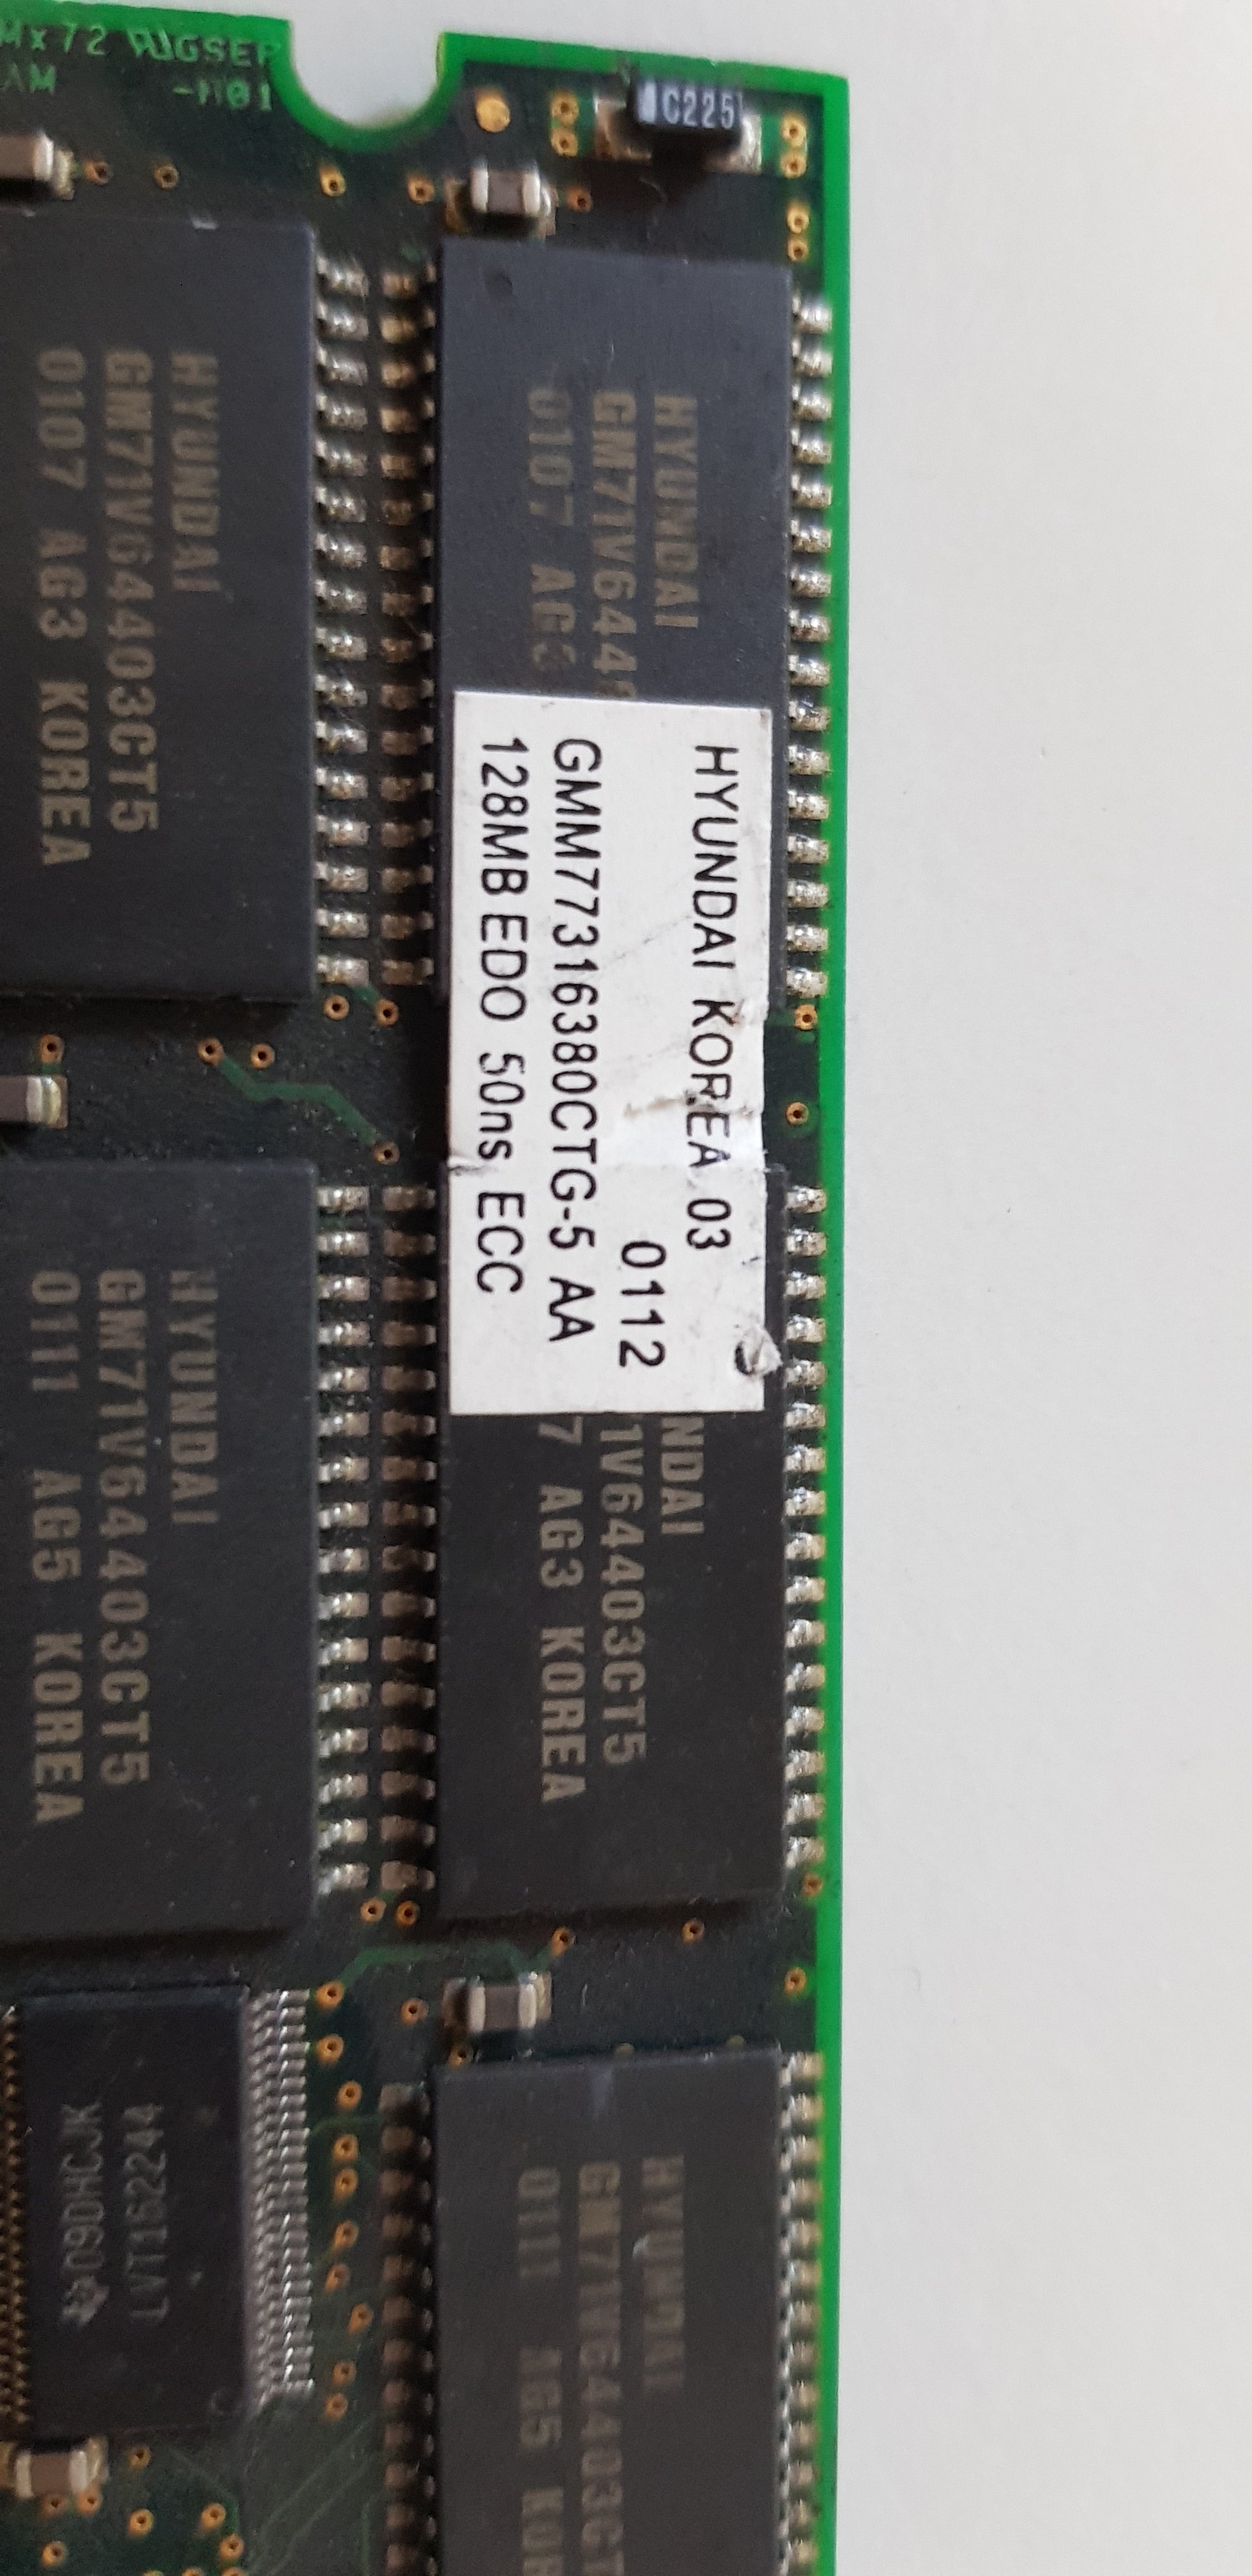 Hyundai/Sun 128MB EDO DIMM 168p Buffered ECC MEMORY MODULE (GMM77316380CTG-5 / 370-3798-02)